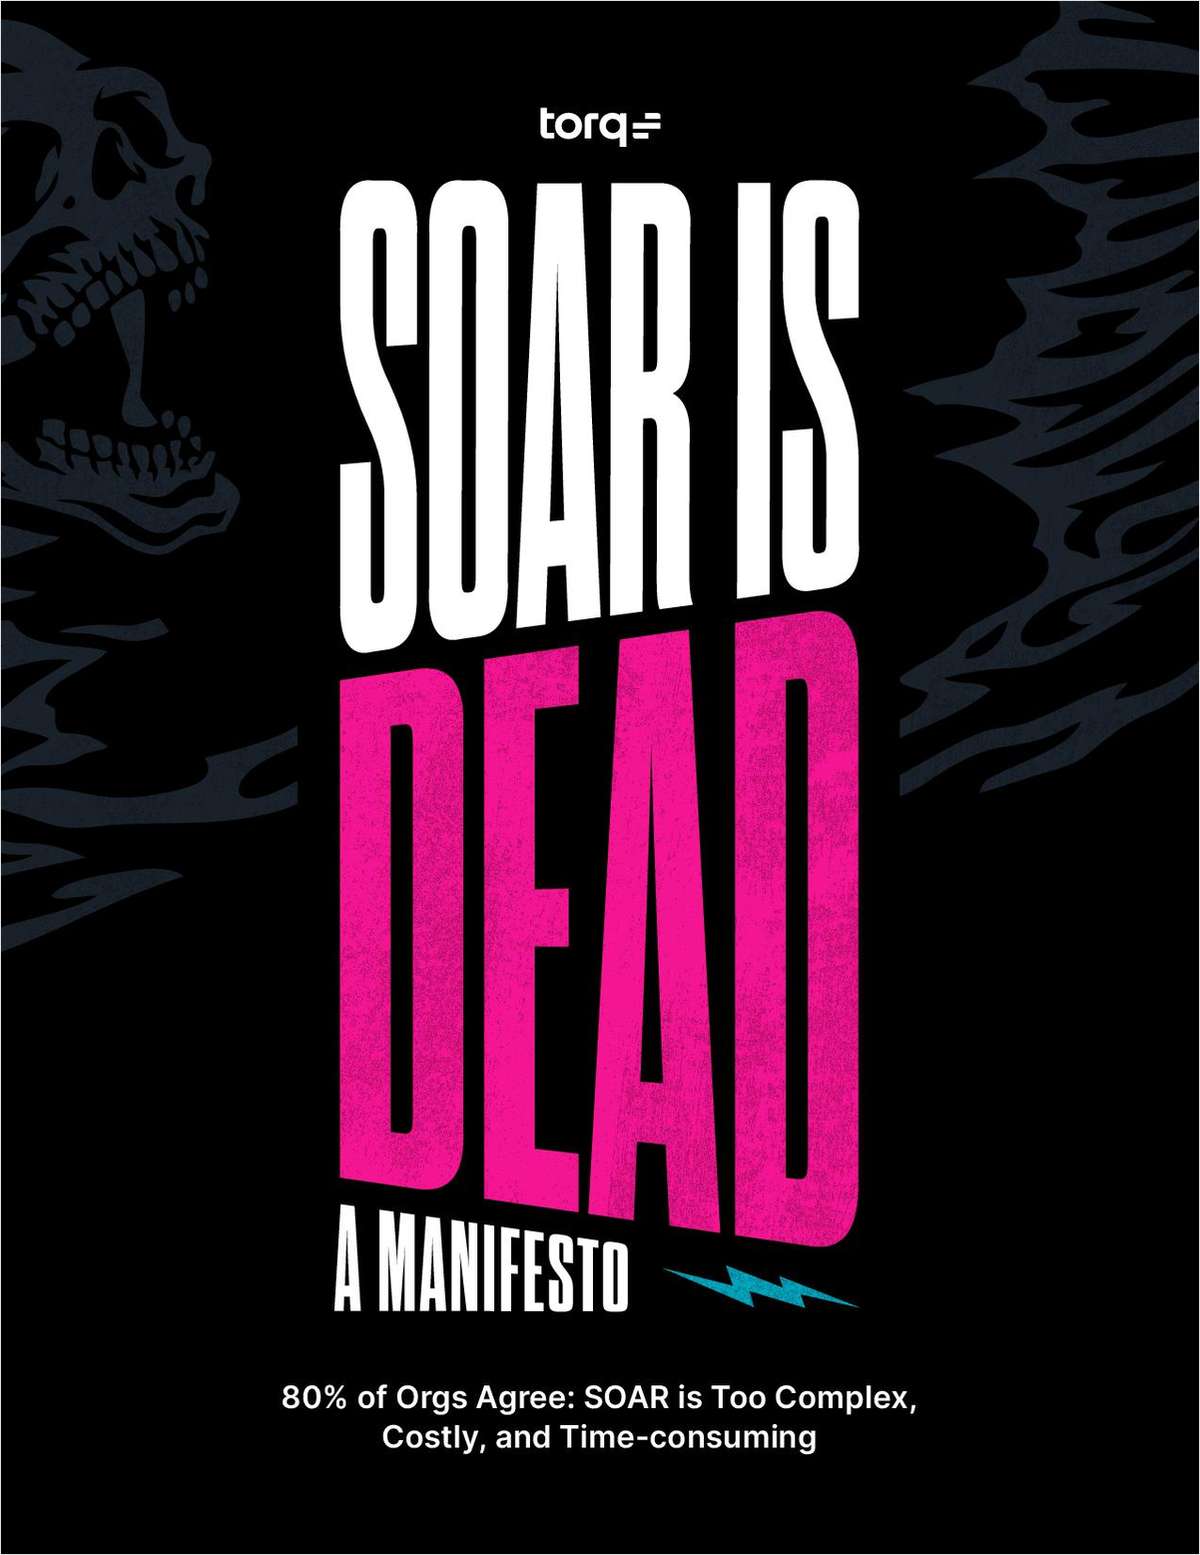 SOAR is Dead Manifesto